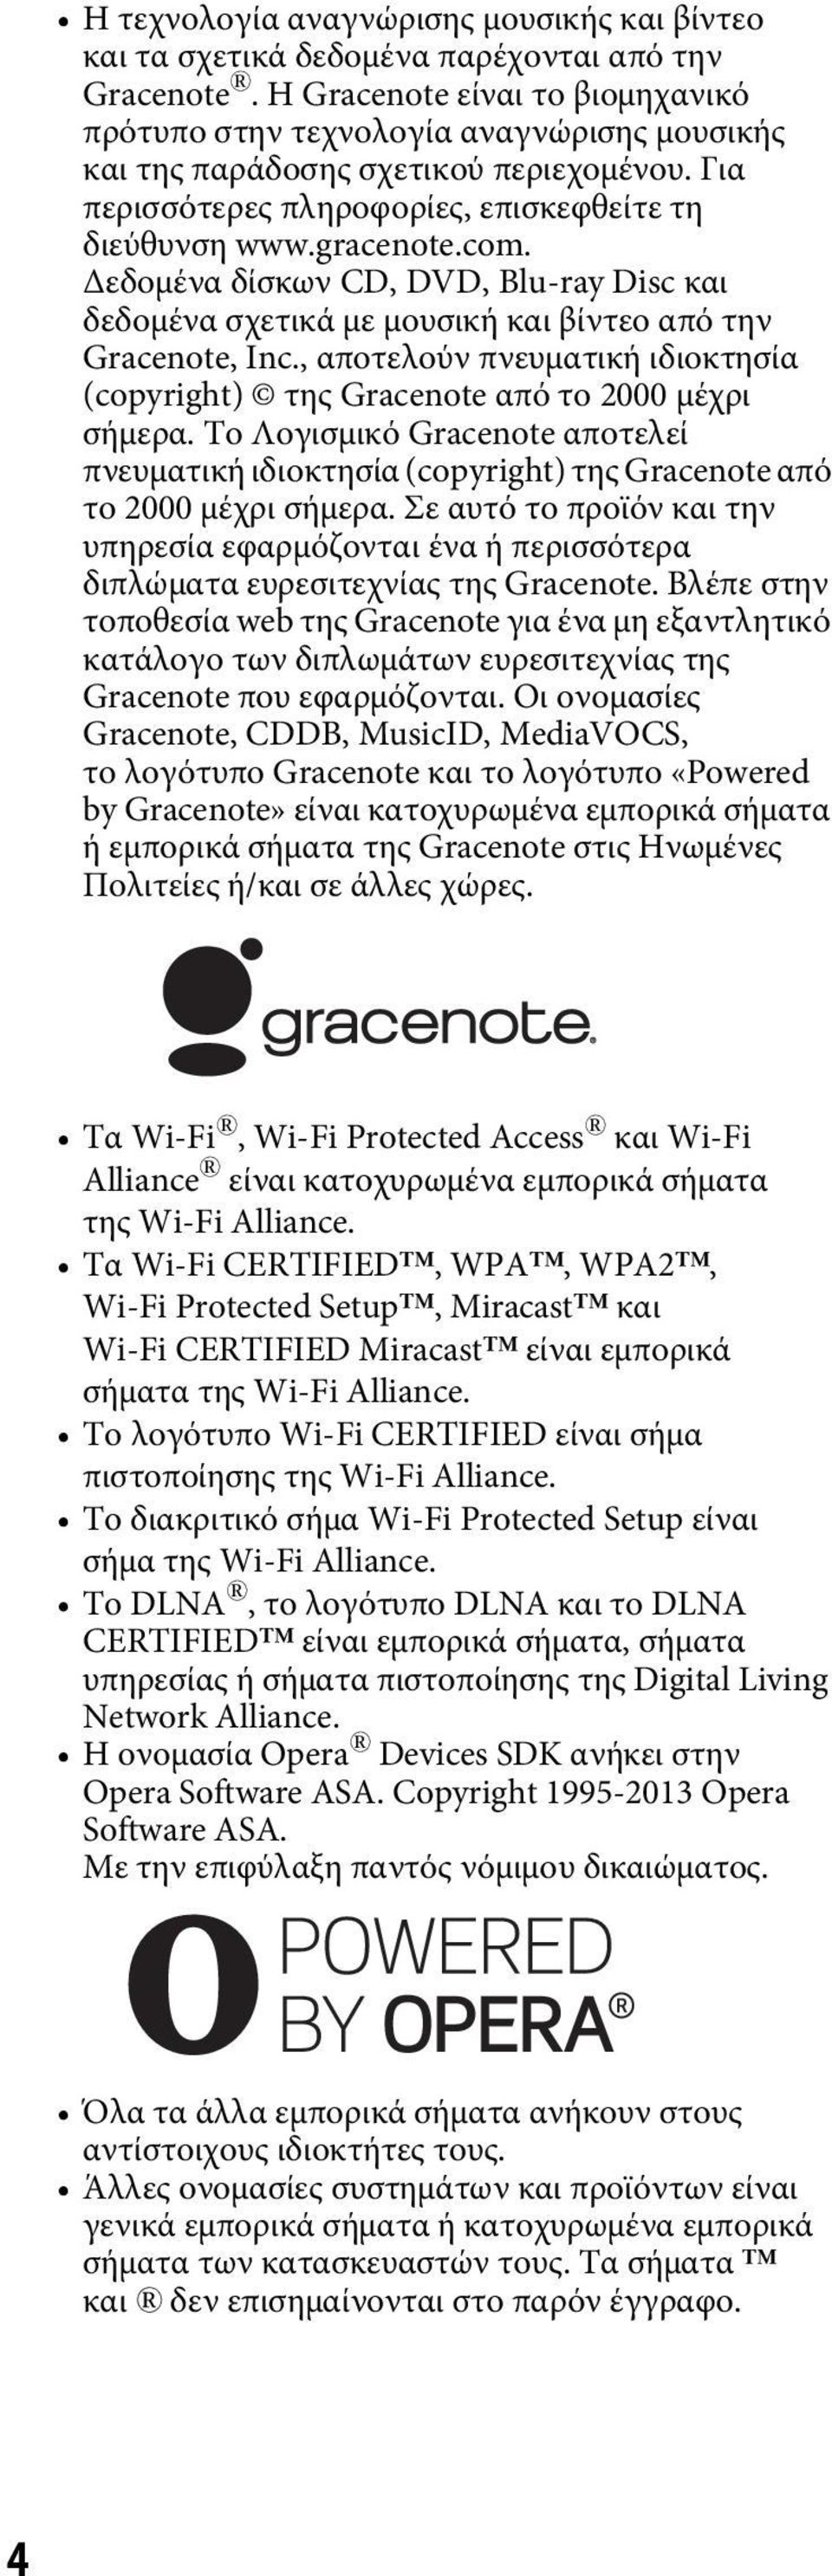 Δεδομένα δίσκων CD, DVD, Blu-ray Disc και δεδομένα σχετικά με μουσική και βίντεο από την Gracenote, Inc., αποτελούν πνευματική ιδιοκτησία (copyright) της Gracenote από το 2000 μέχρι σήμερα.